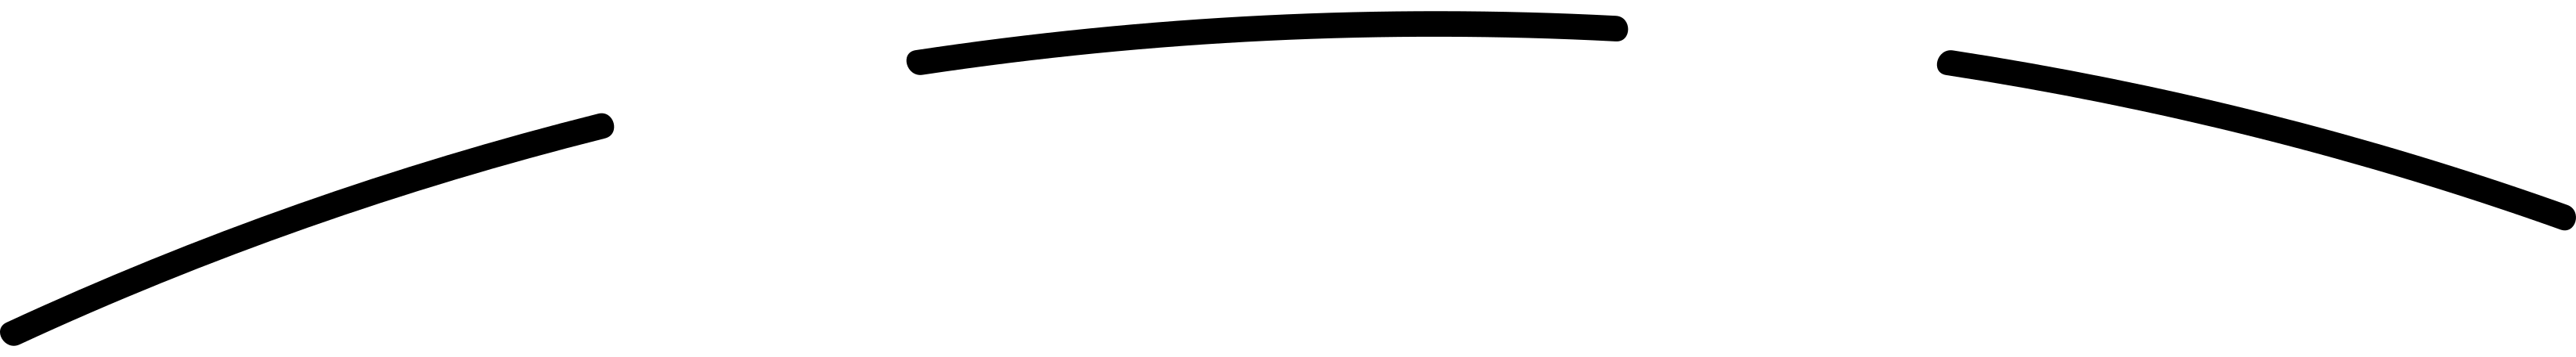 Illustration black dotted line background aux formats PNG, SVG